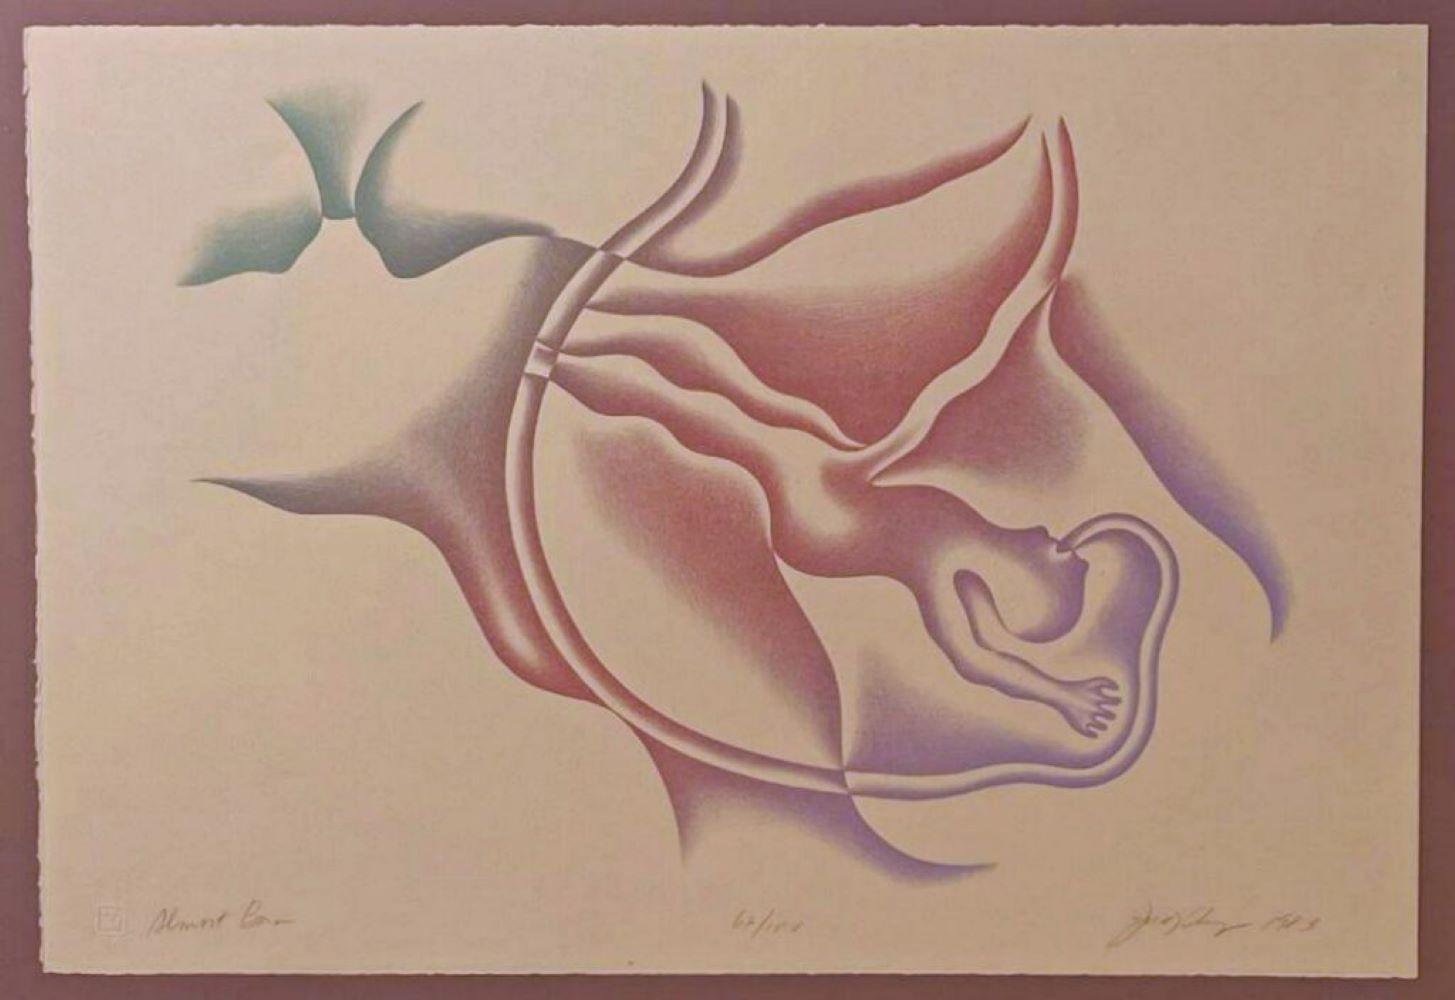 Judy Chicago Abstract Print – Fast Born ( frühe signierte/n Lithographie des weltbekannten feministischen Künstlers) 